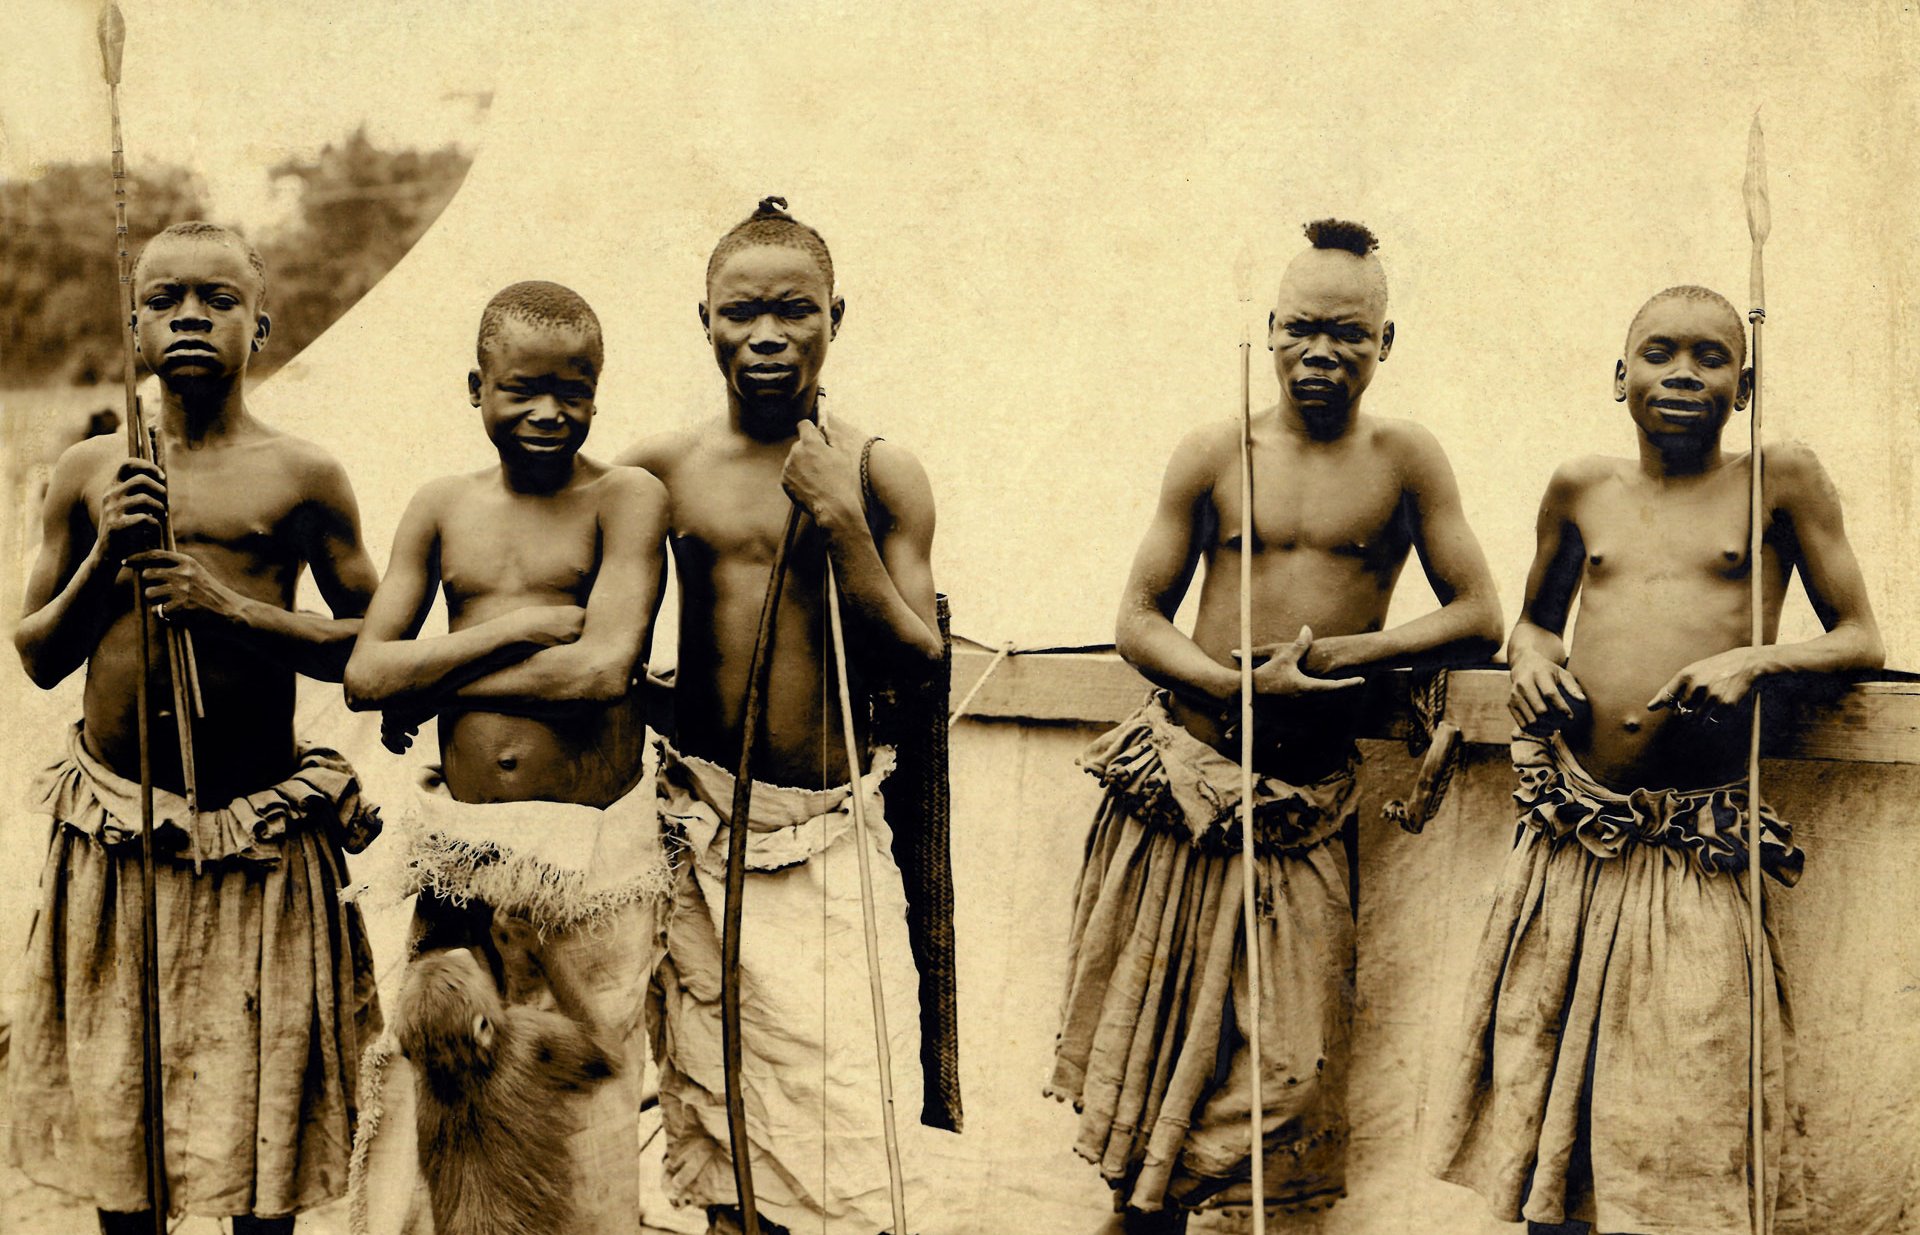 Photos Ota Benga [le second en partant de la gauche] et les pygmées du Congo. Exposition de Saint-Louis, photographie anonyme, 1904.
